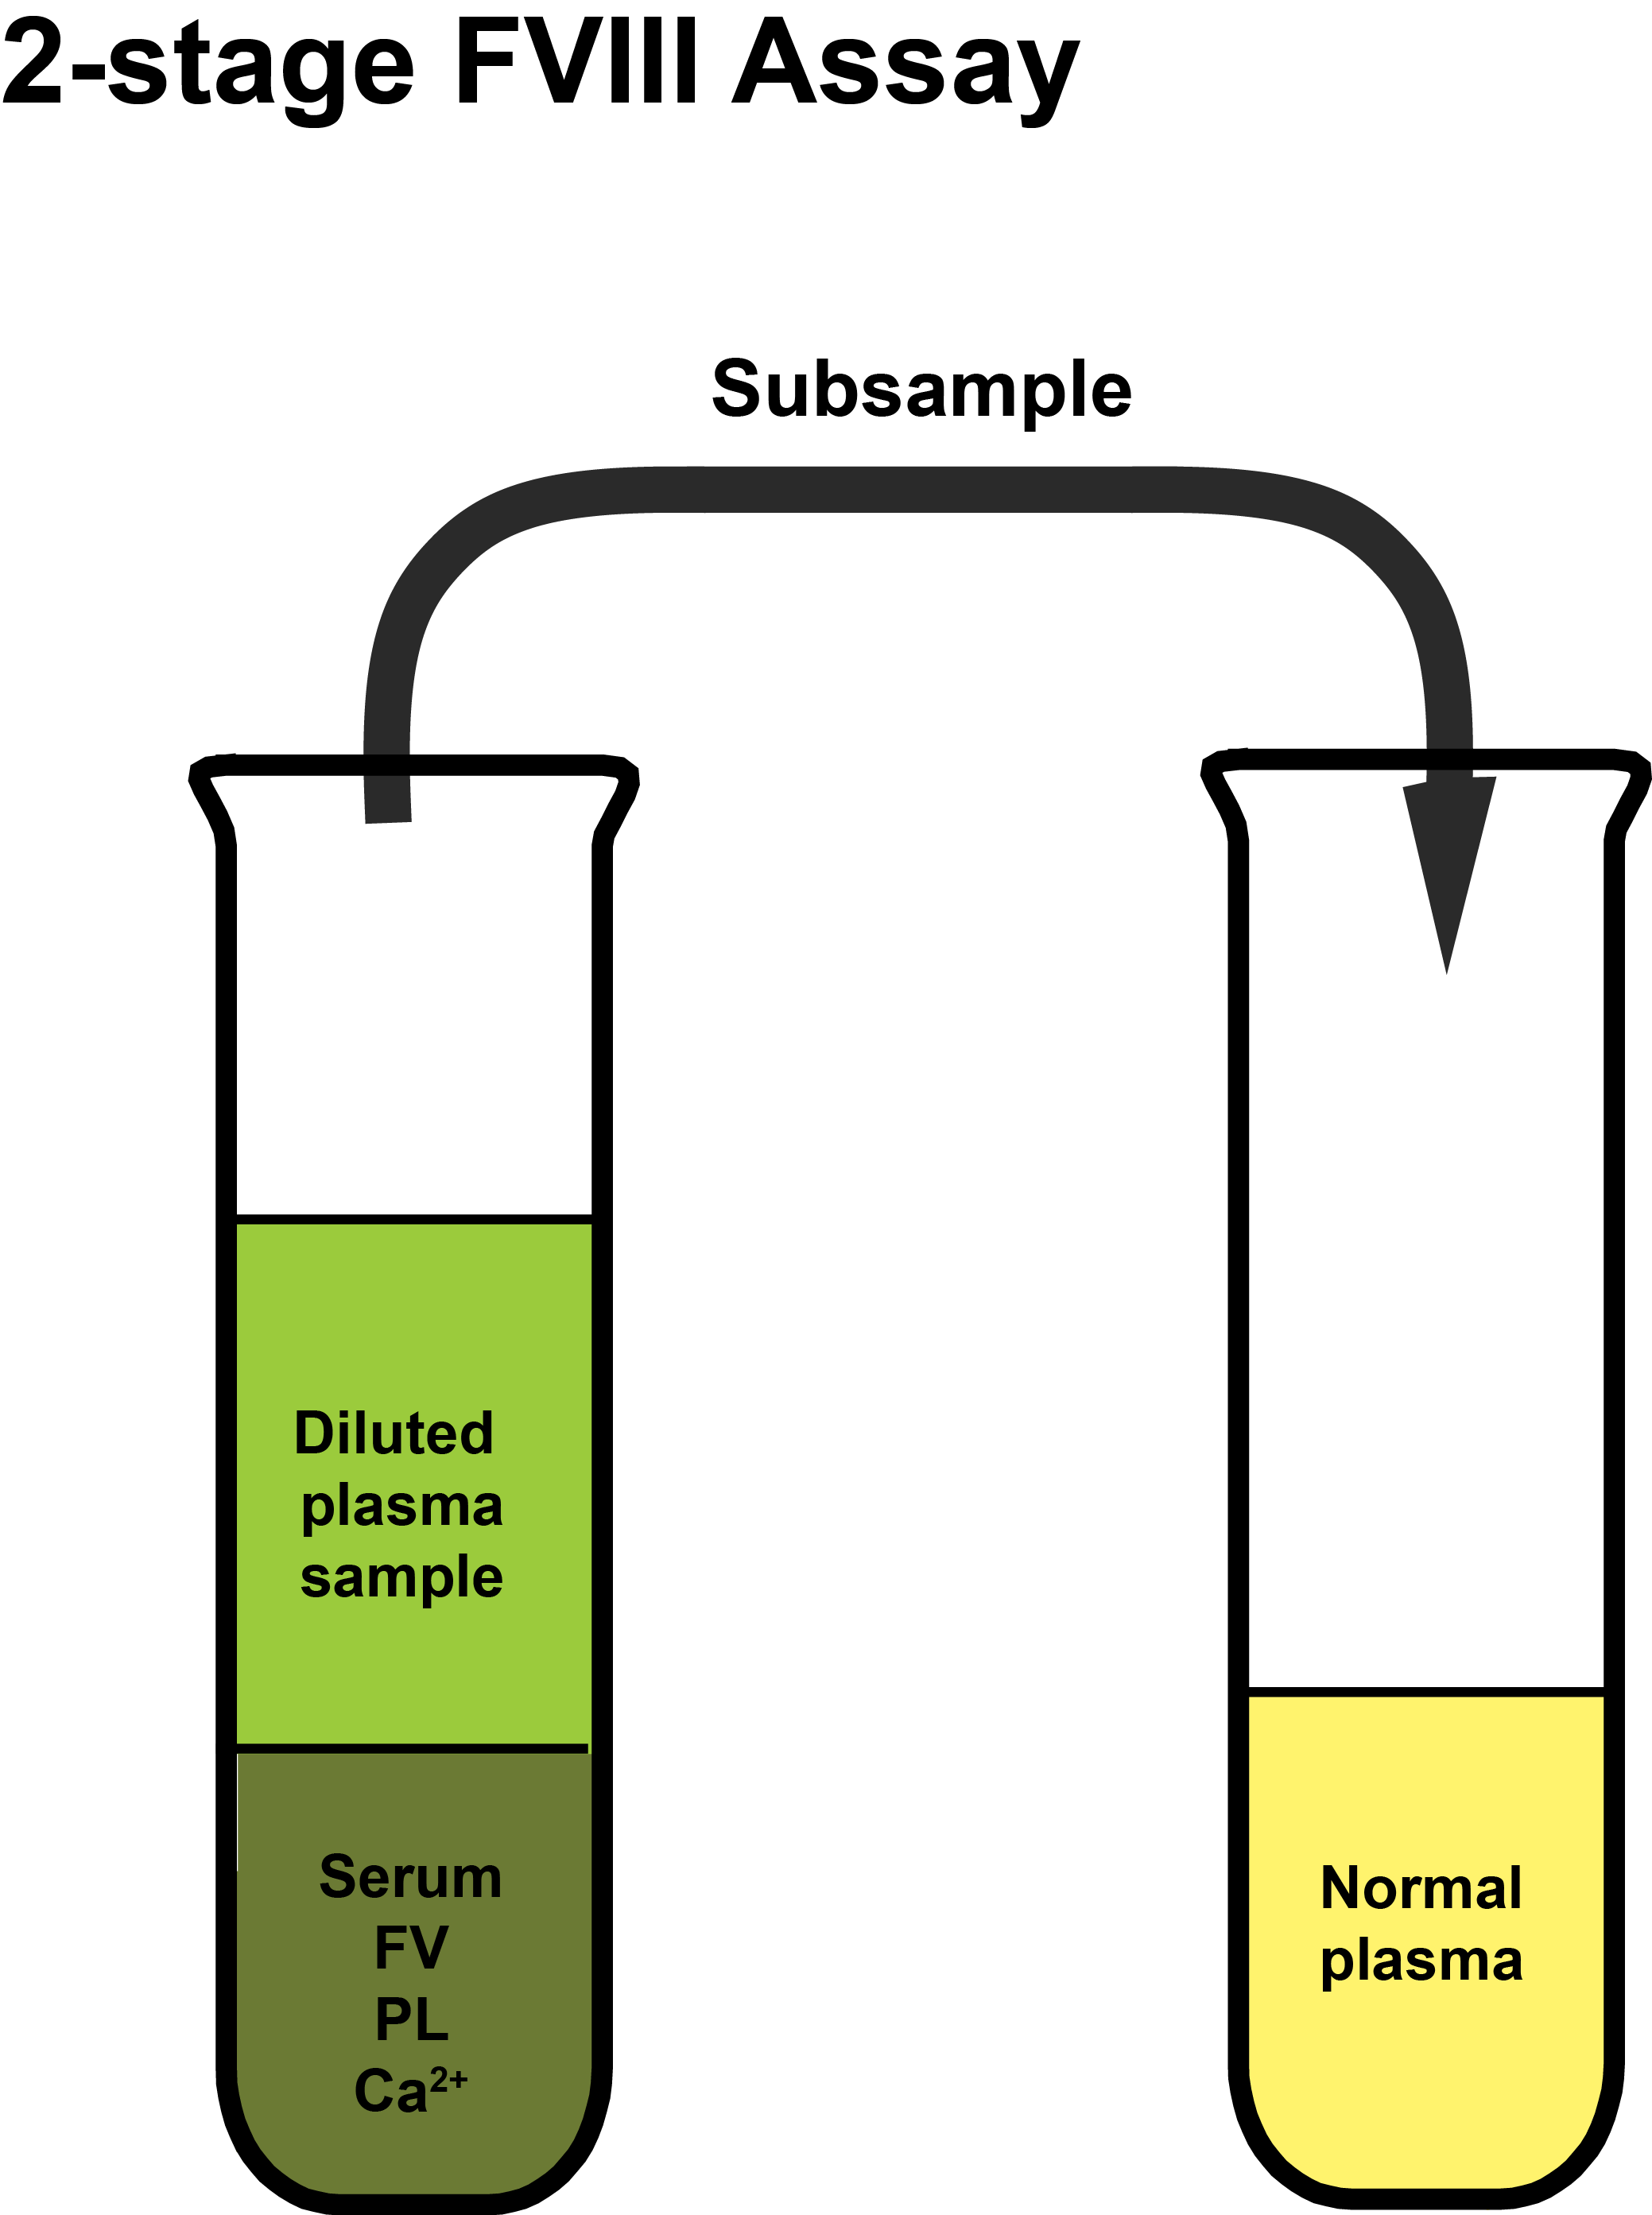 2-stage FVIII assay - schematic